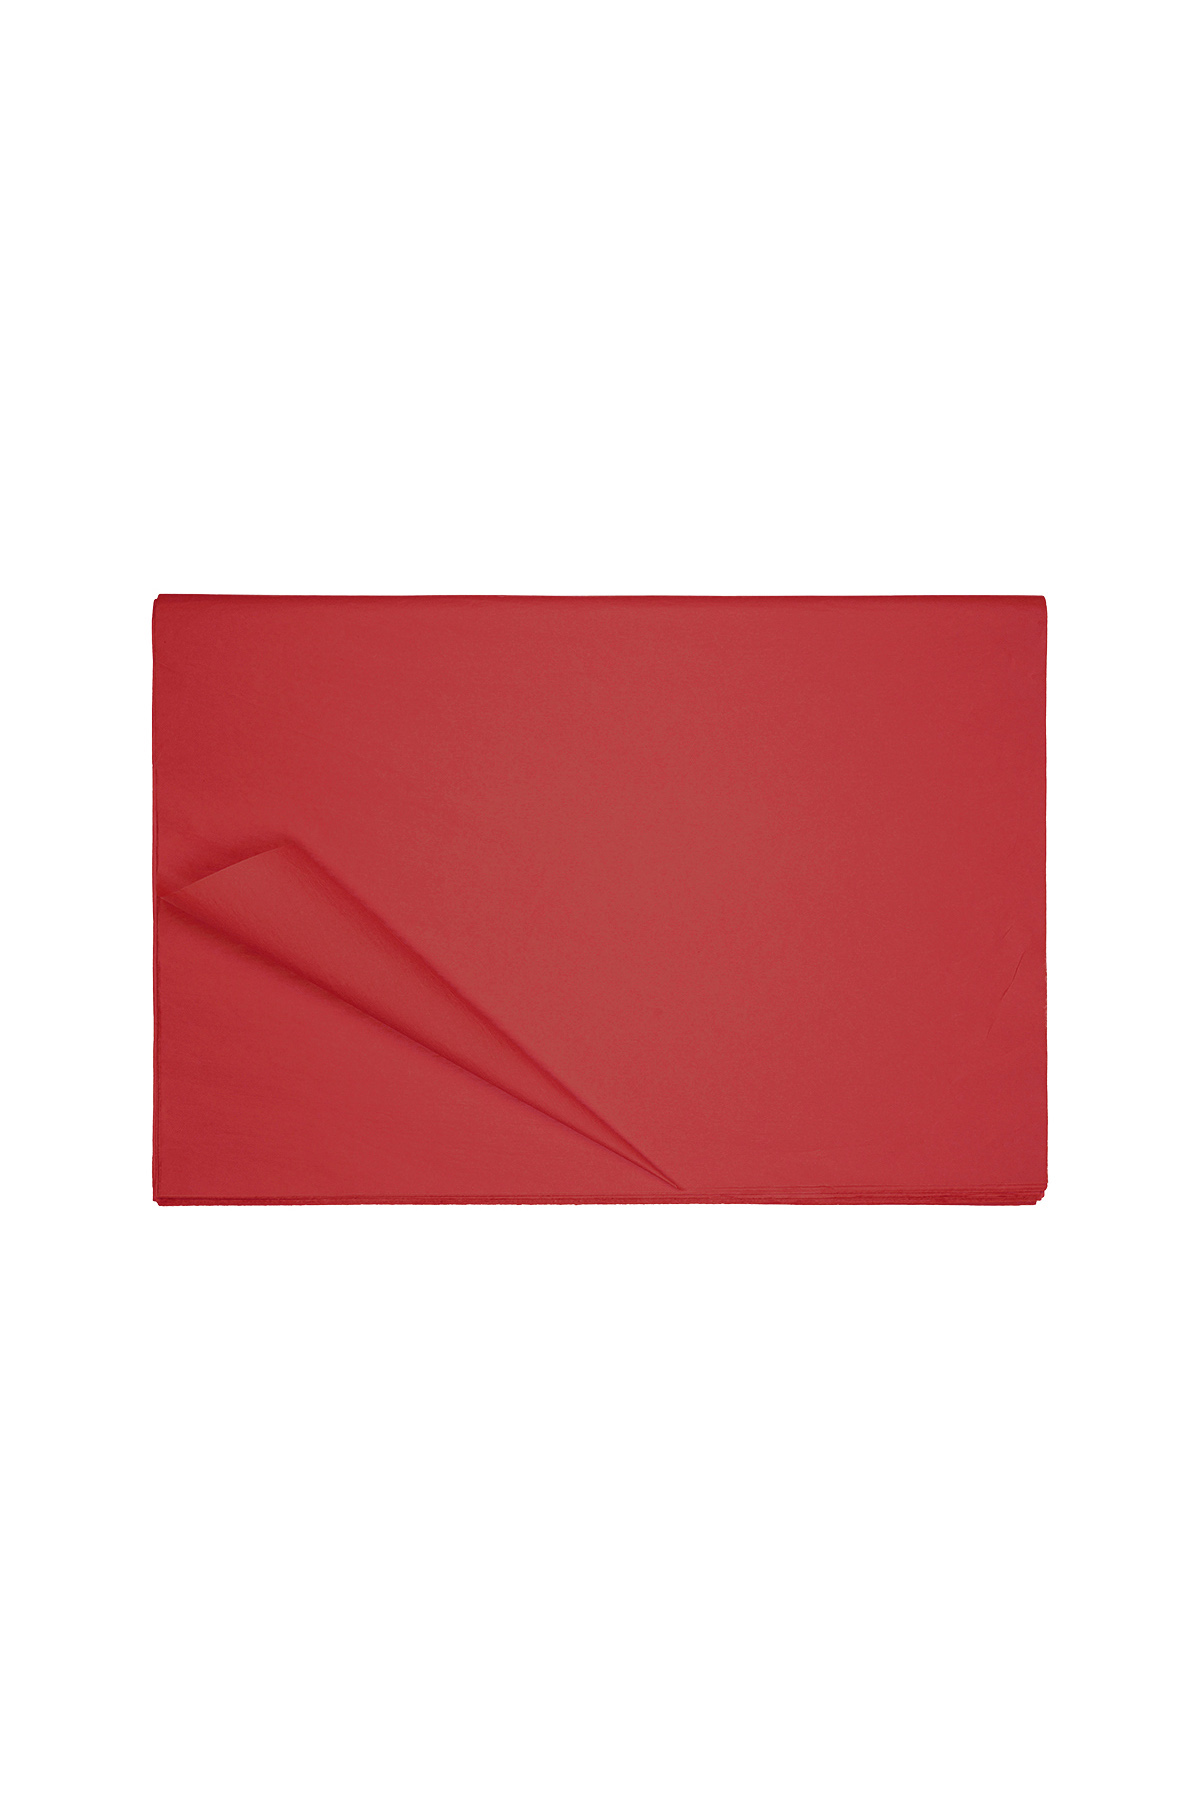 Papier de soie petit - Papier rouge h5 